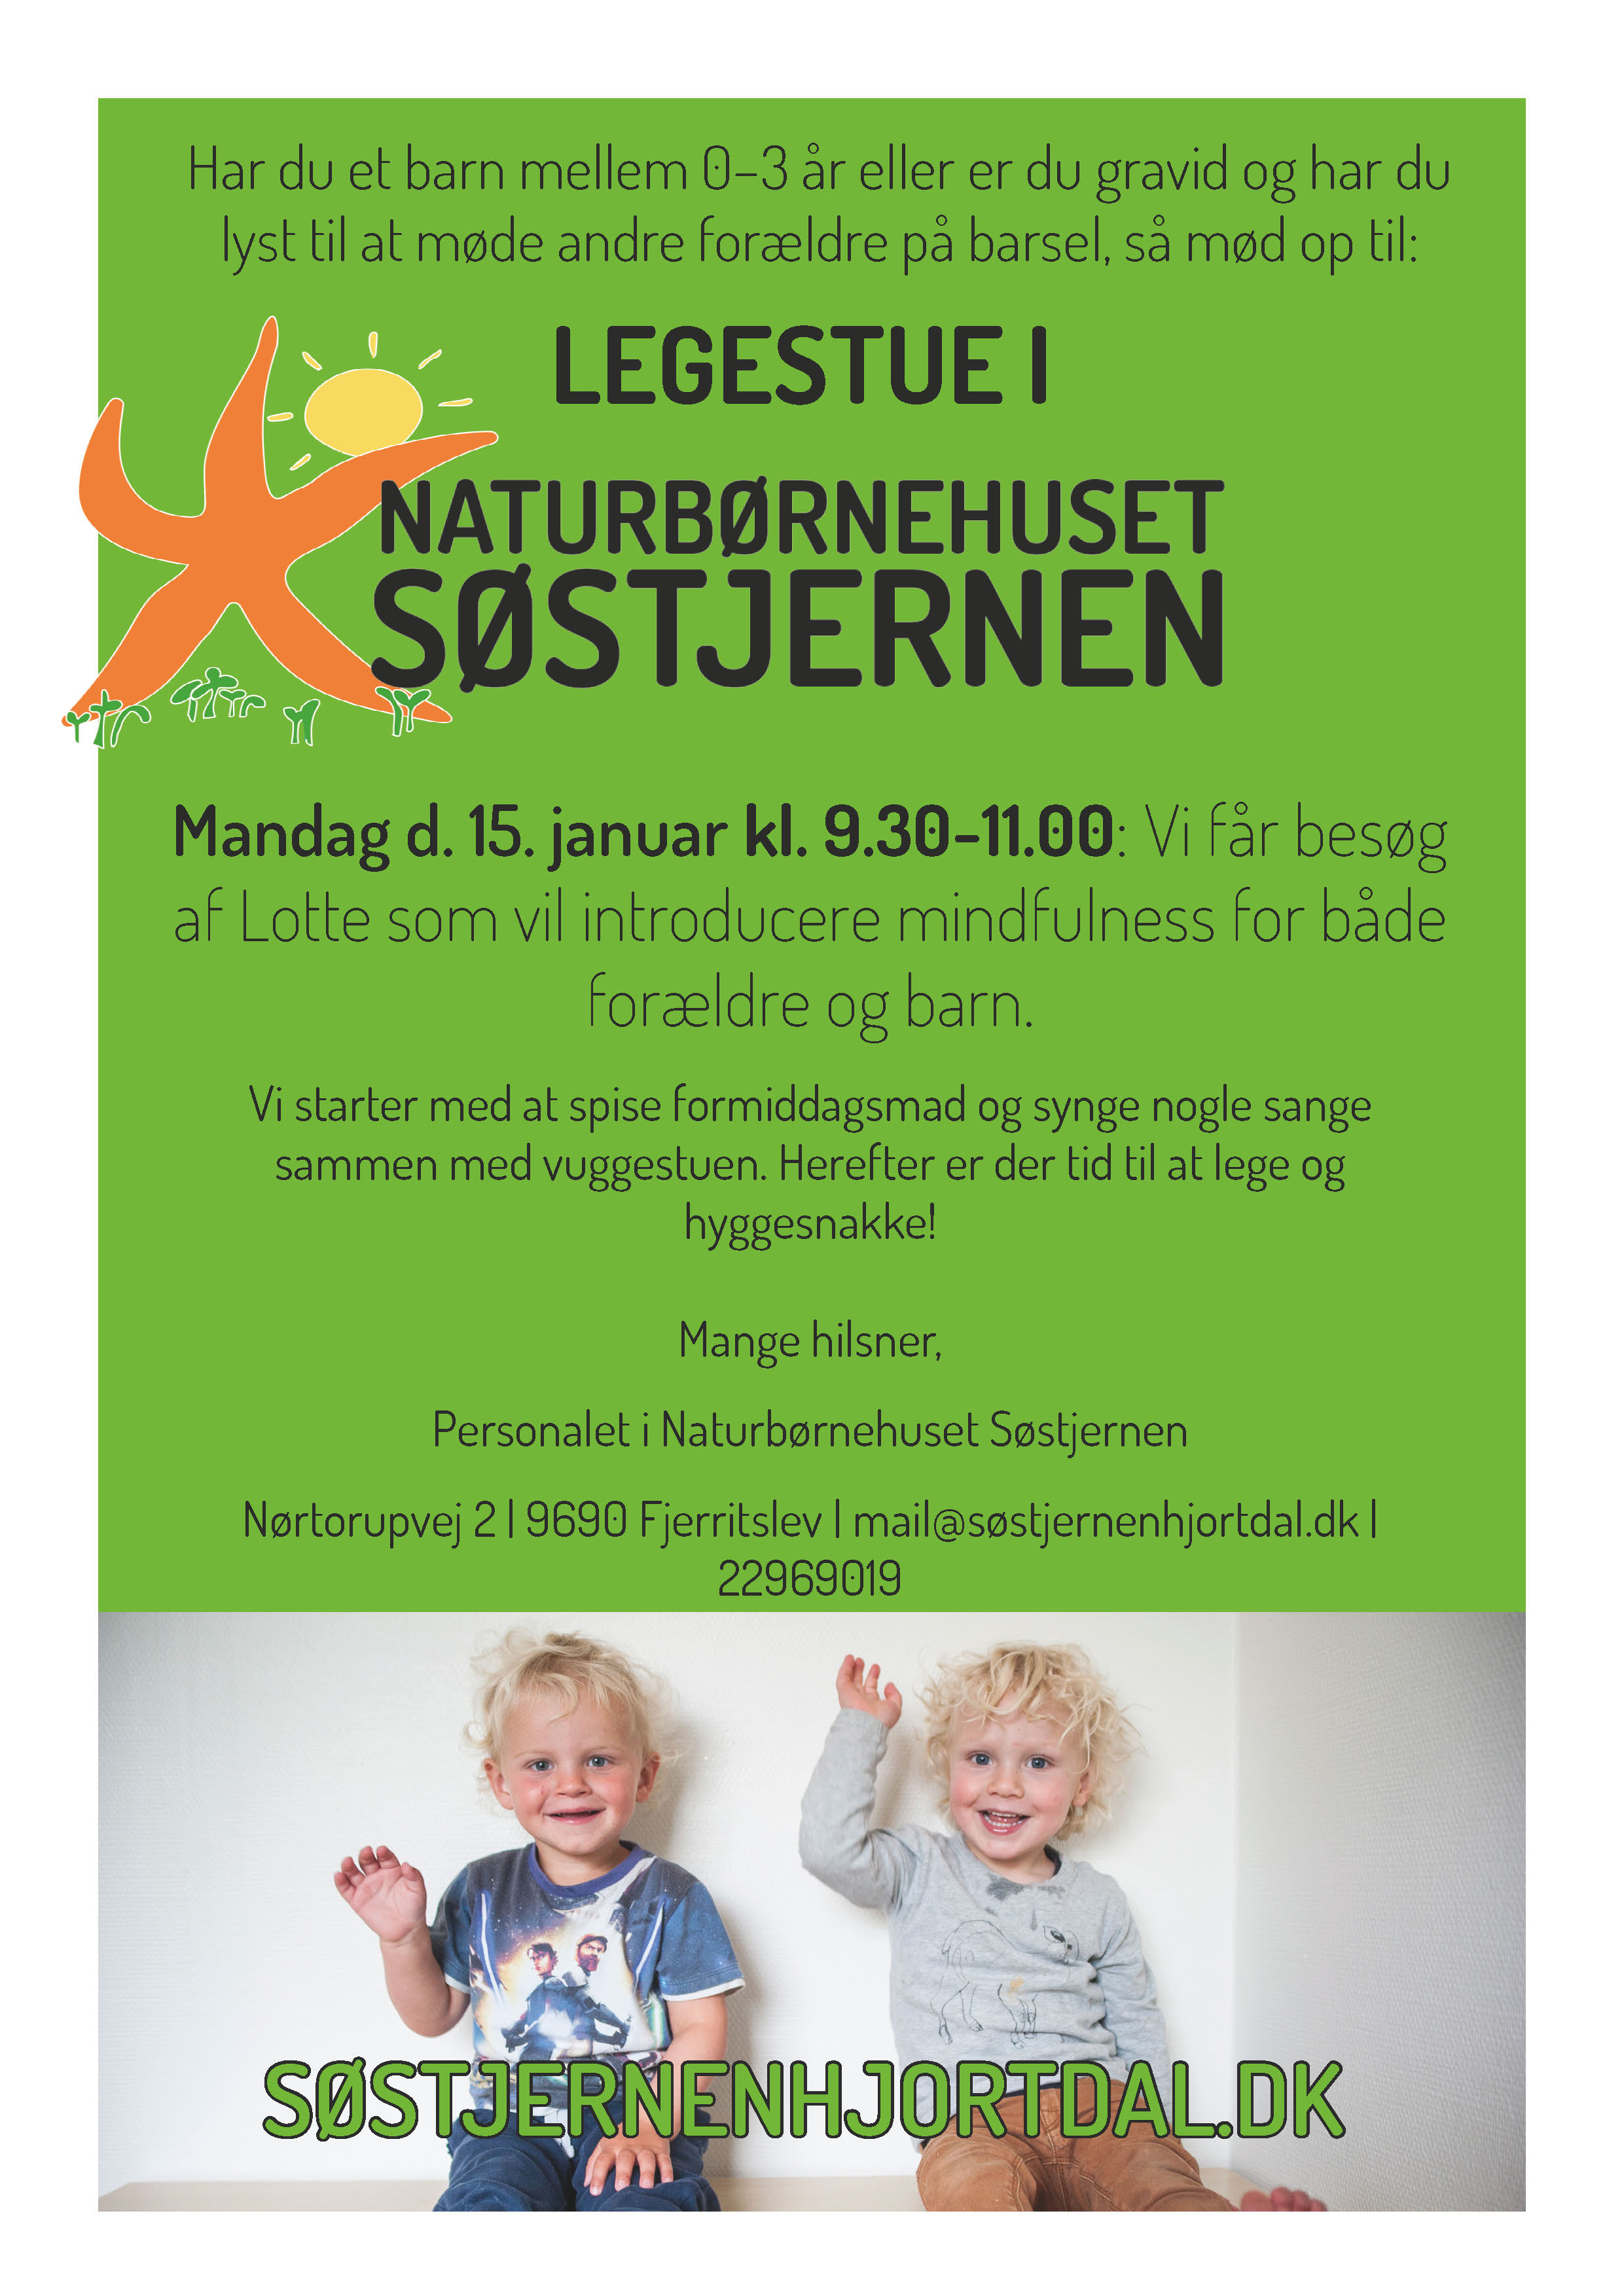 Legestue for forældre på barsel i Naturbørnehuset Søstjernen i Nordjylland.